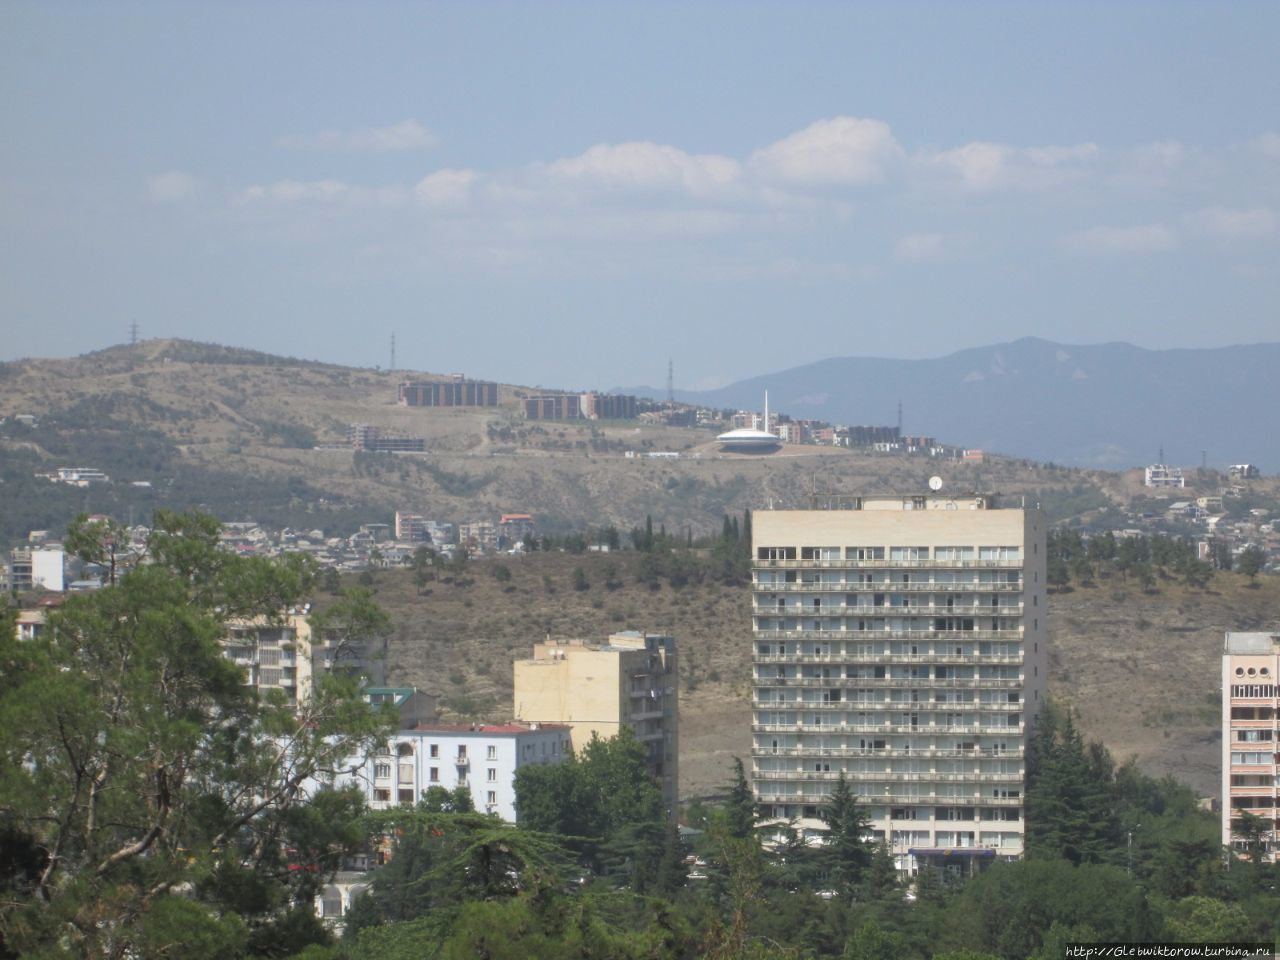 Прогулка по бывшему парку Победы Тбилиси, Грузия